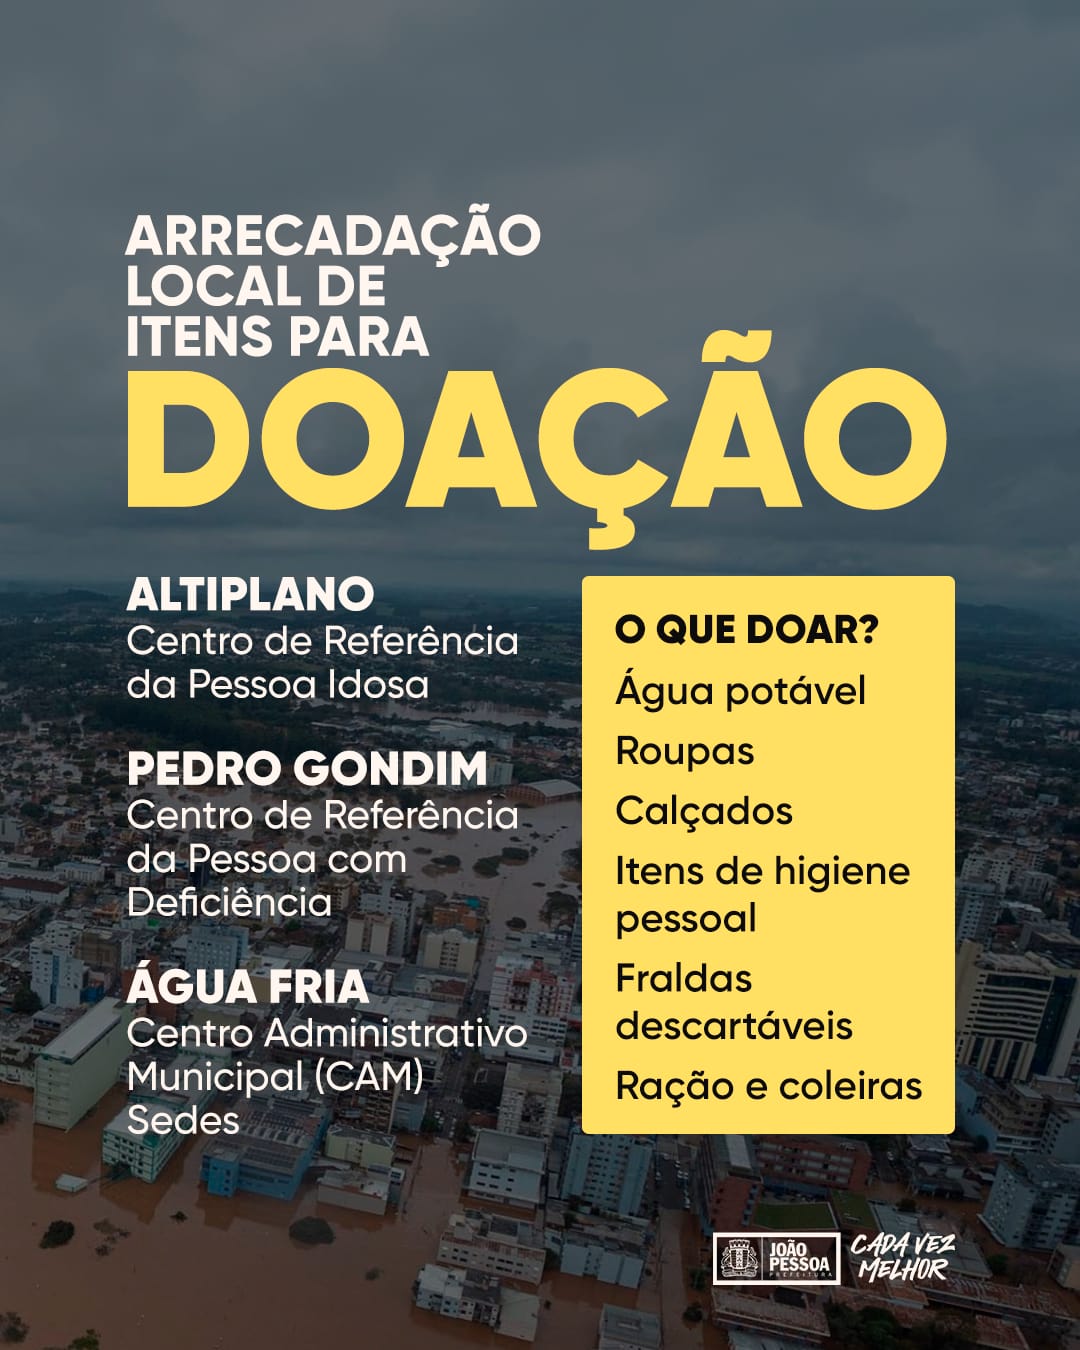 SOS Rio Grande do Sul: Prefeitura de João Pessoa disponibiliza pontos de coleta para ajudar população gaúcha